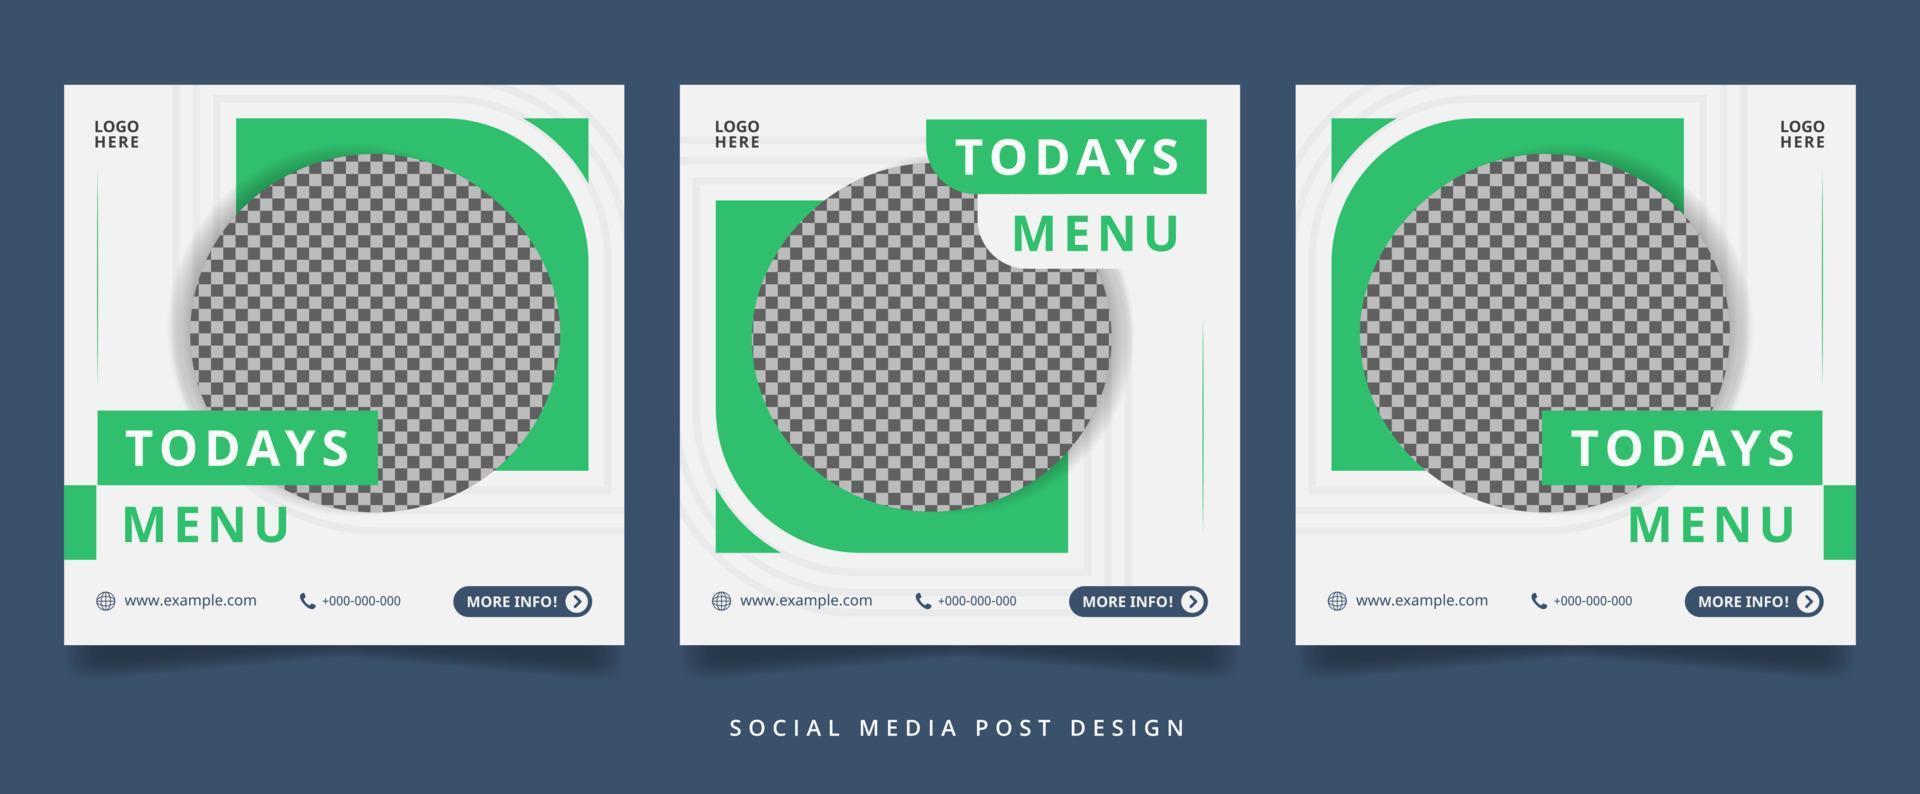 minimalistisk grön kulinarisk flygblad eller banner för sociala medier vektor